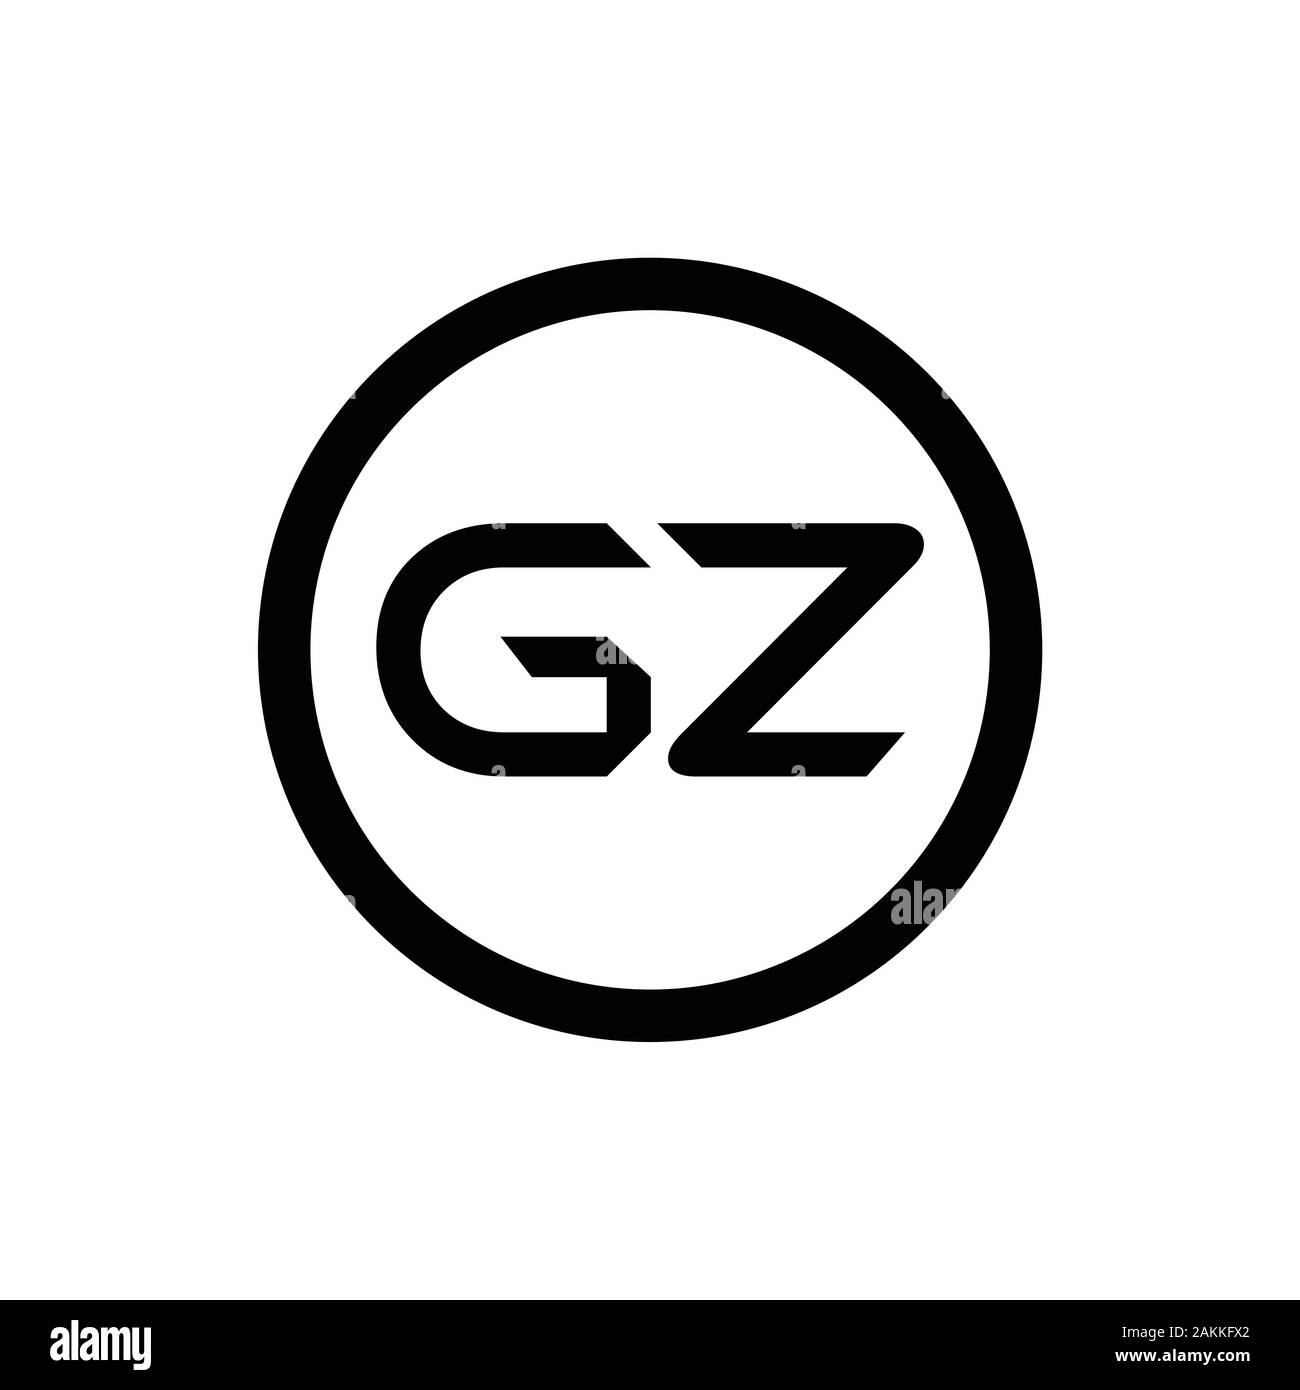 Initial GZ Letter Linked Logo. GZ letter Type Logo Design vector Template. Abstract Letter GZ logo Design Stock Vector